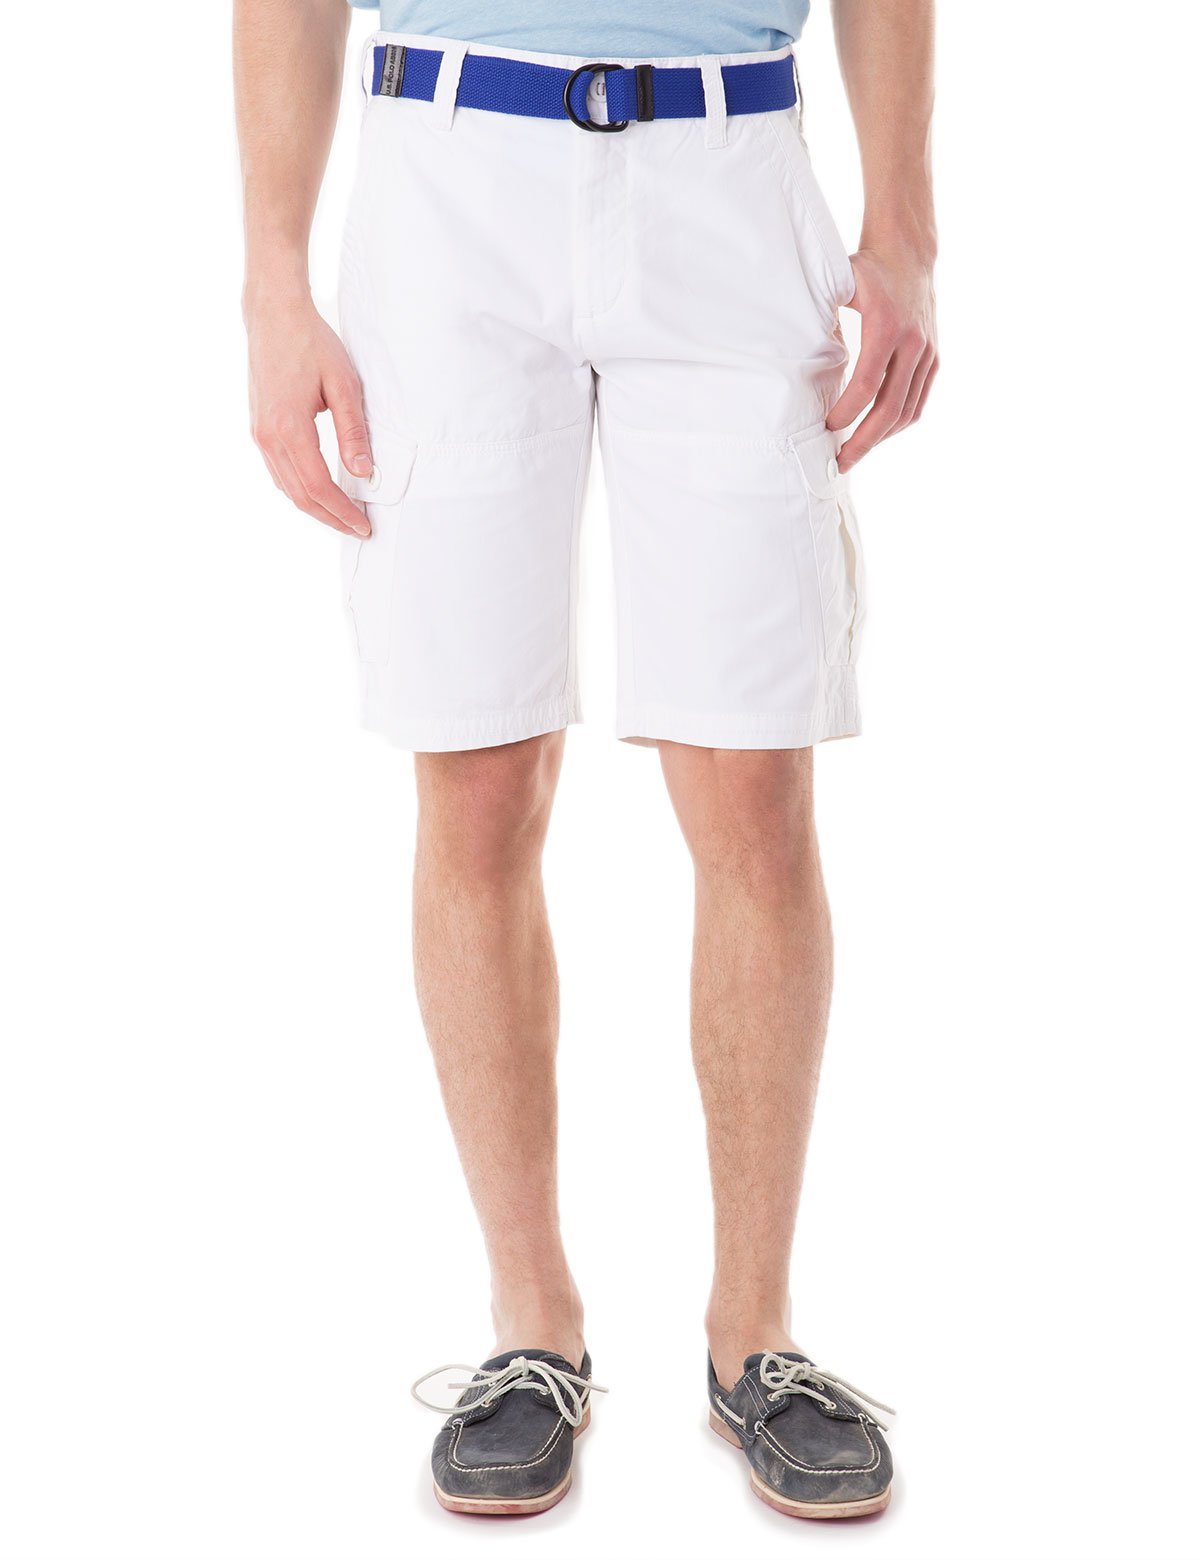 polo cargo shorts